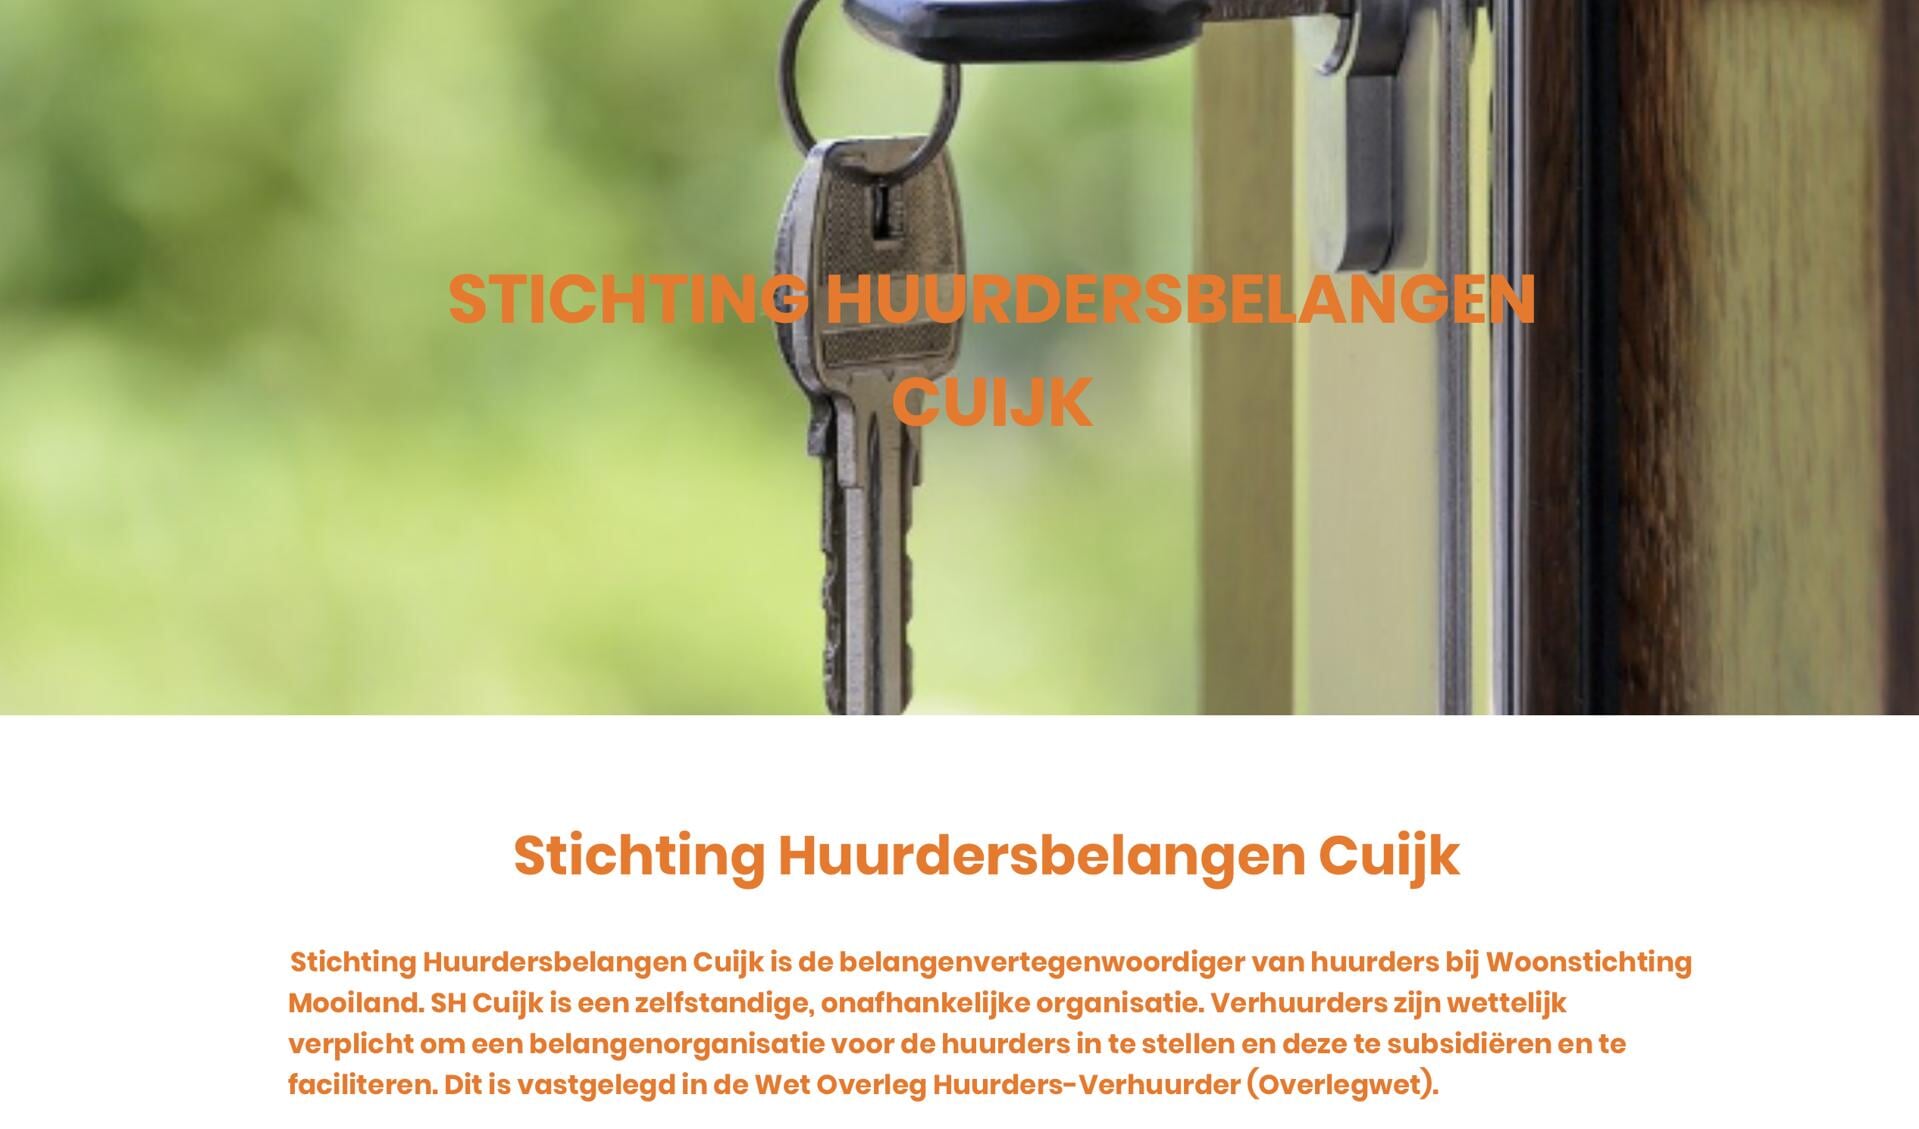 De homepage van Stichting Huurdersbelangen Cuijk